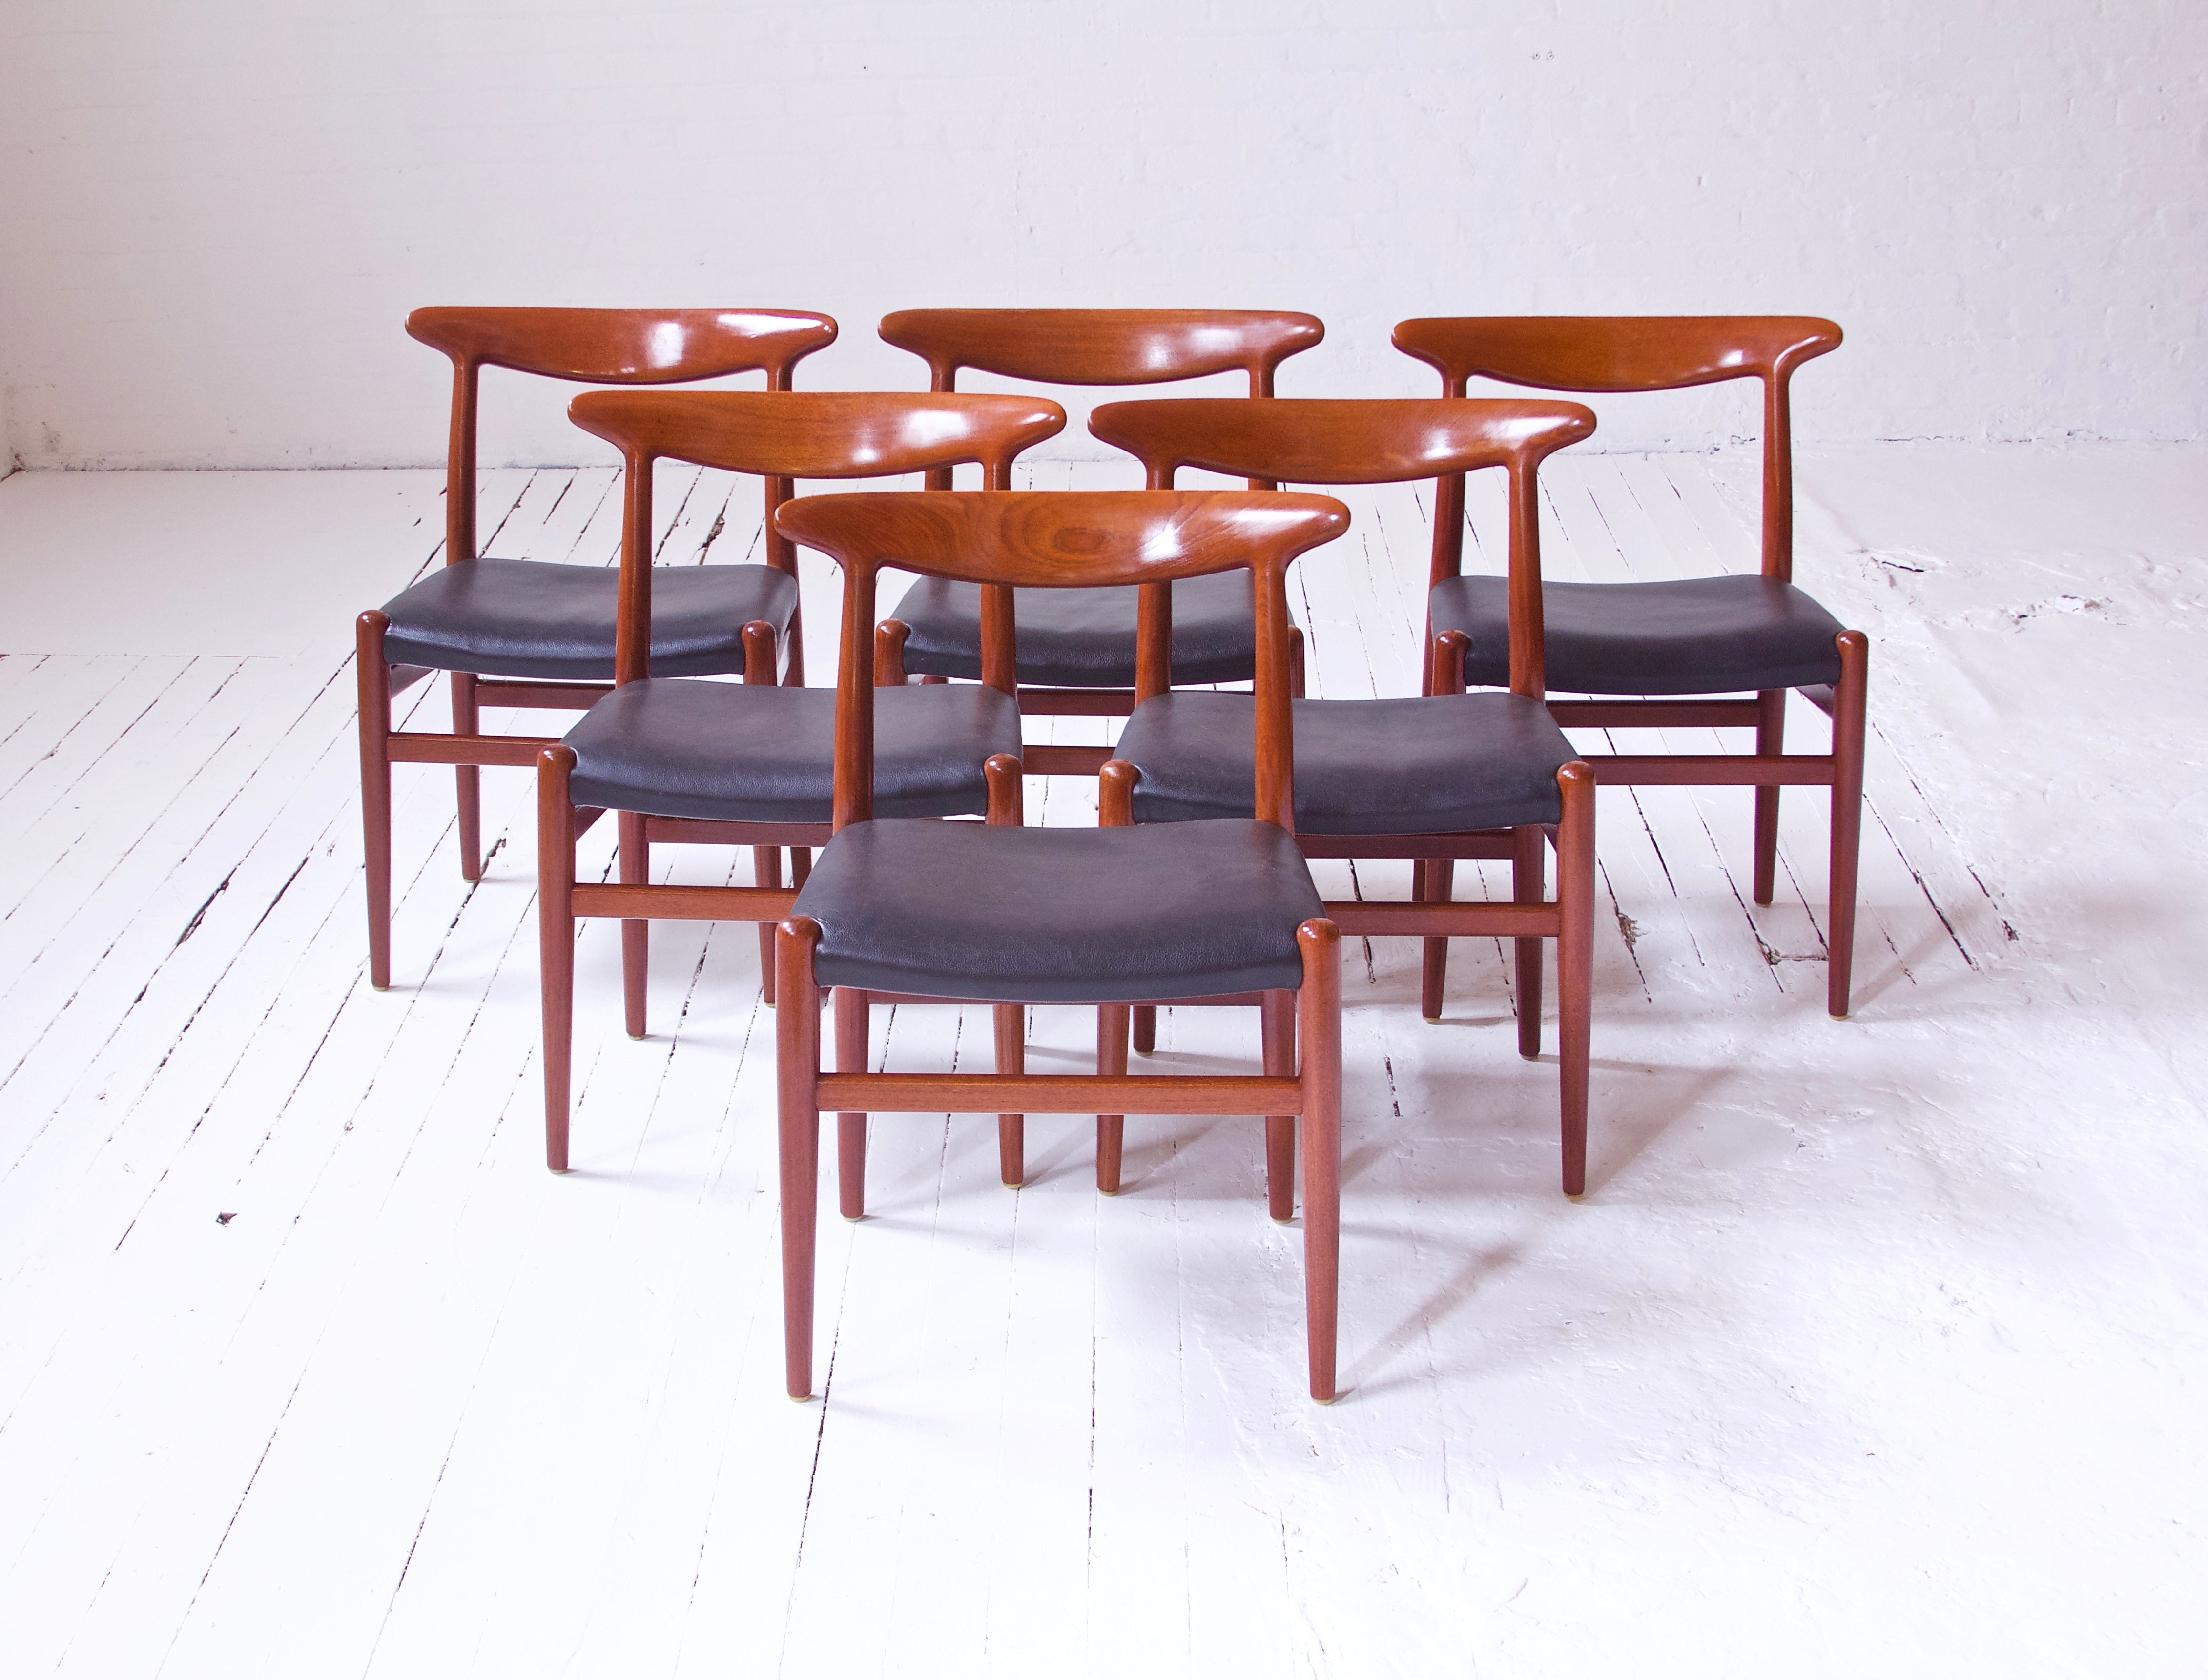 Ein ikonisches Beispiel für Wegners historisches Werk im Bereich des skandinavischen Sitzmöbeldesigns. Hier haben wir ein wunderschön erhaltenes Set von sechs 